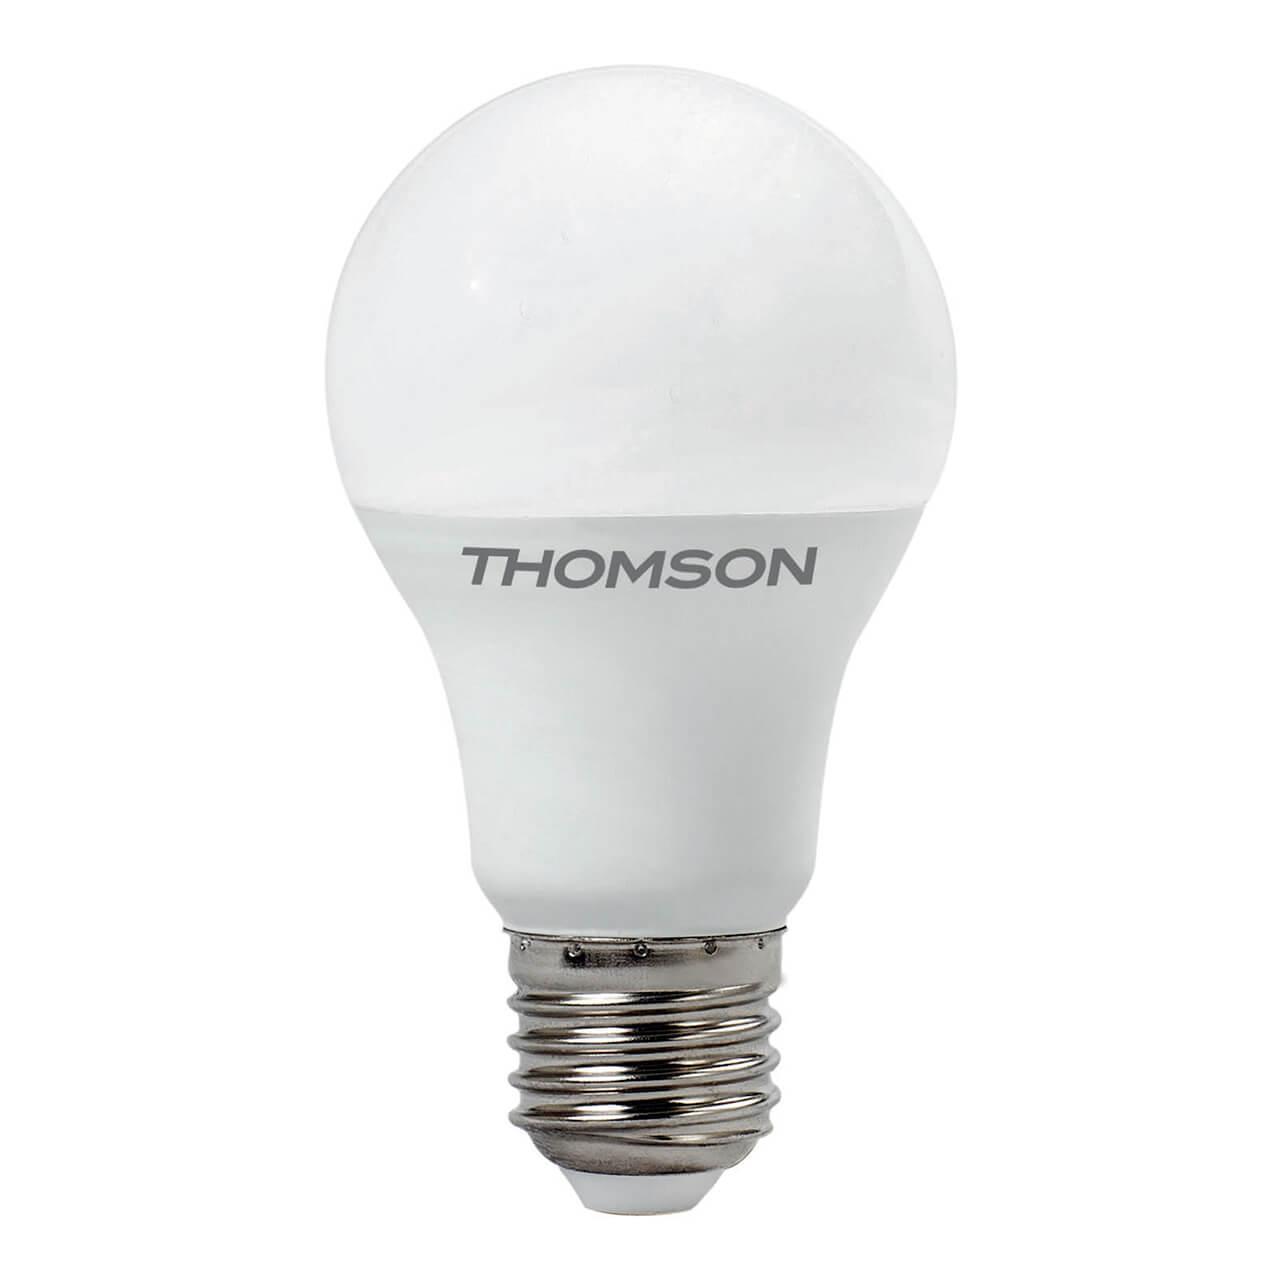 TH-B2009 Лампа светодиодная E27 15W 3000K груша матовая Thomson